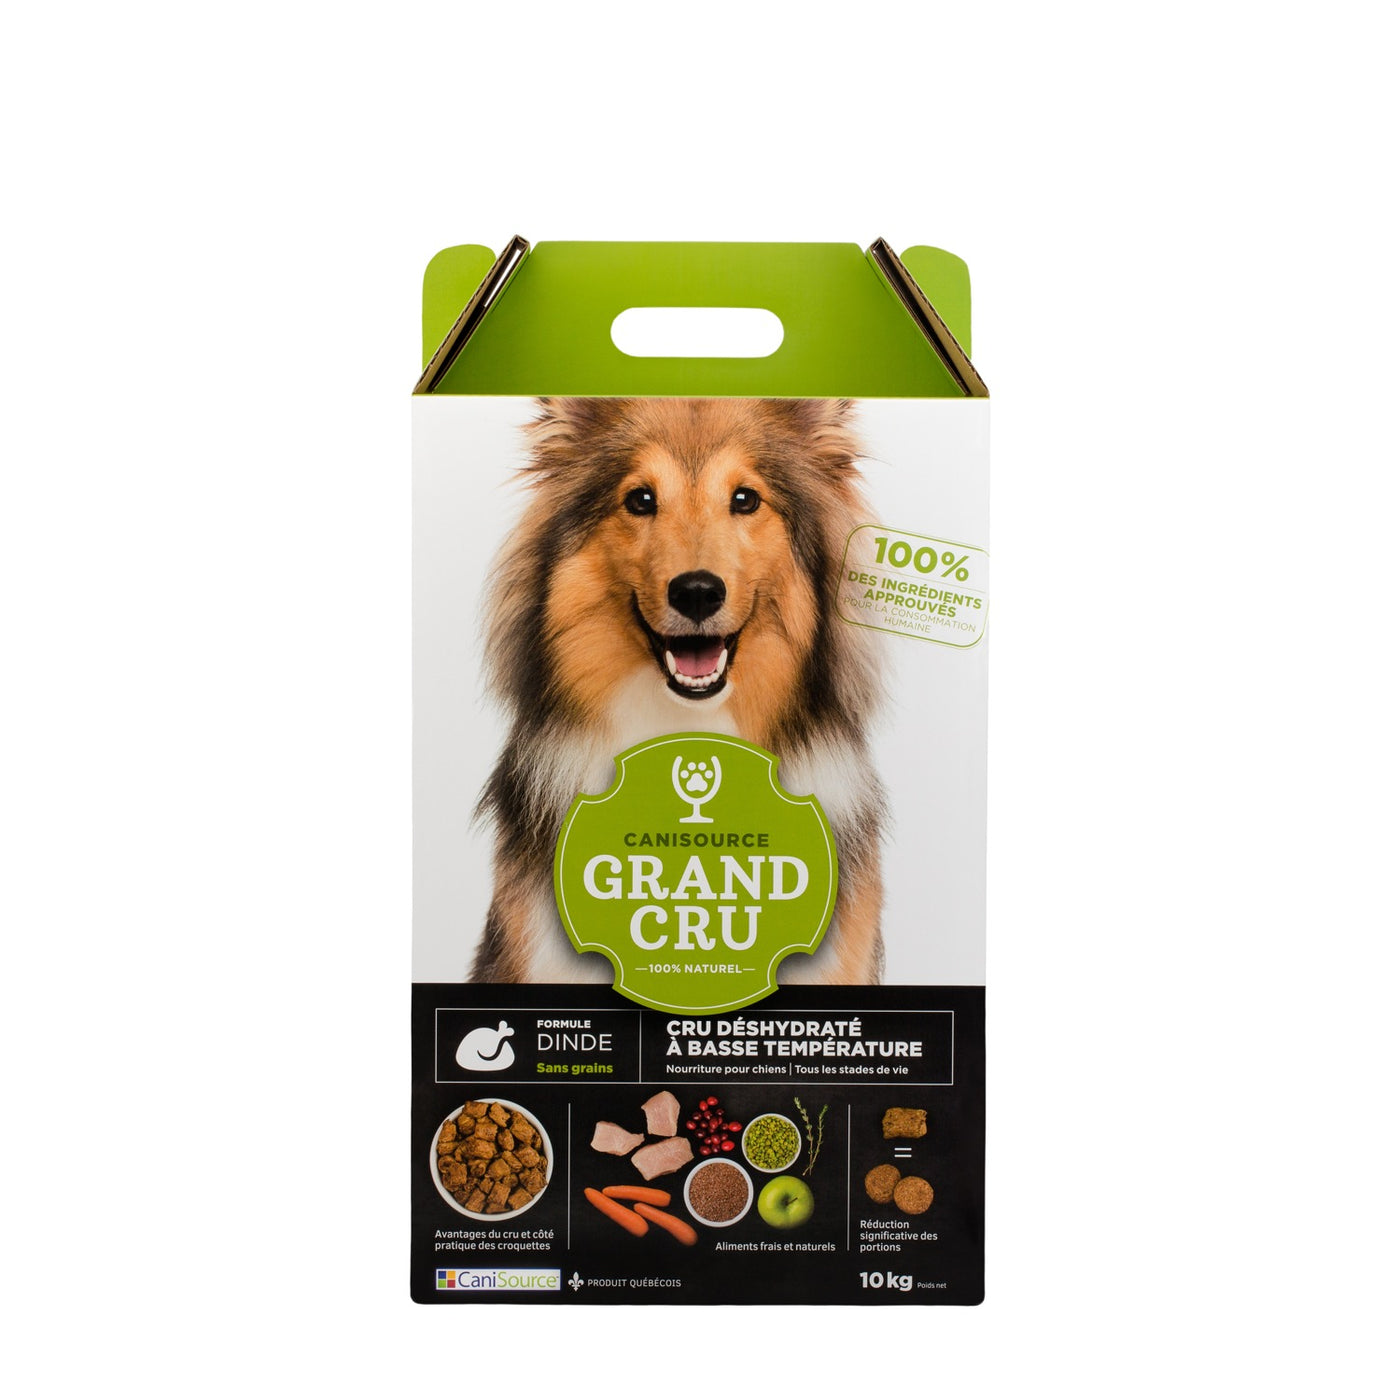 Grand Cru - Turkey Grain-free Dehydrated Raw Dog Food